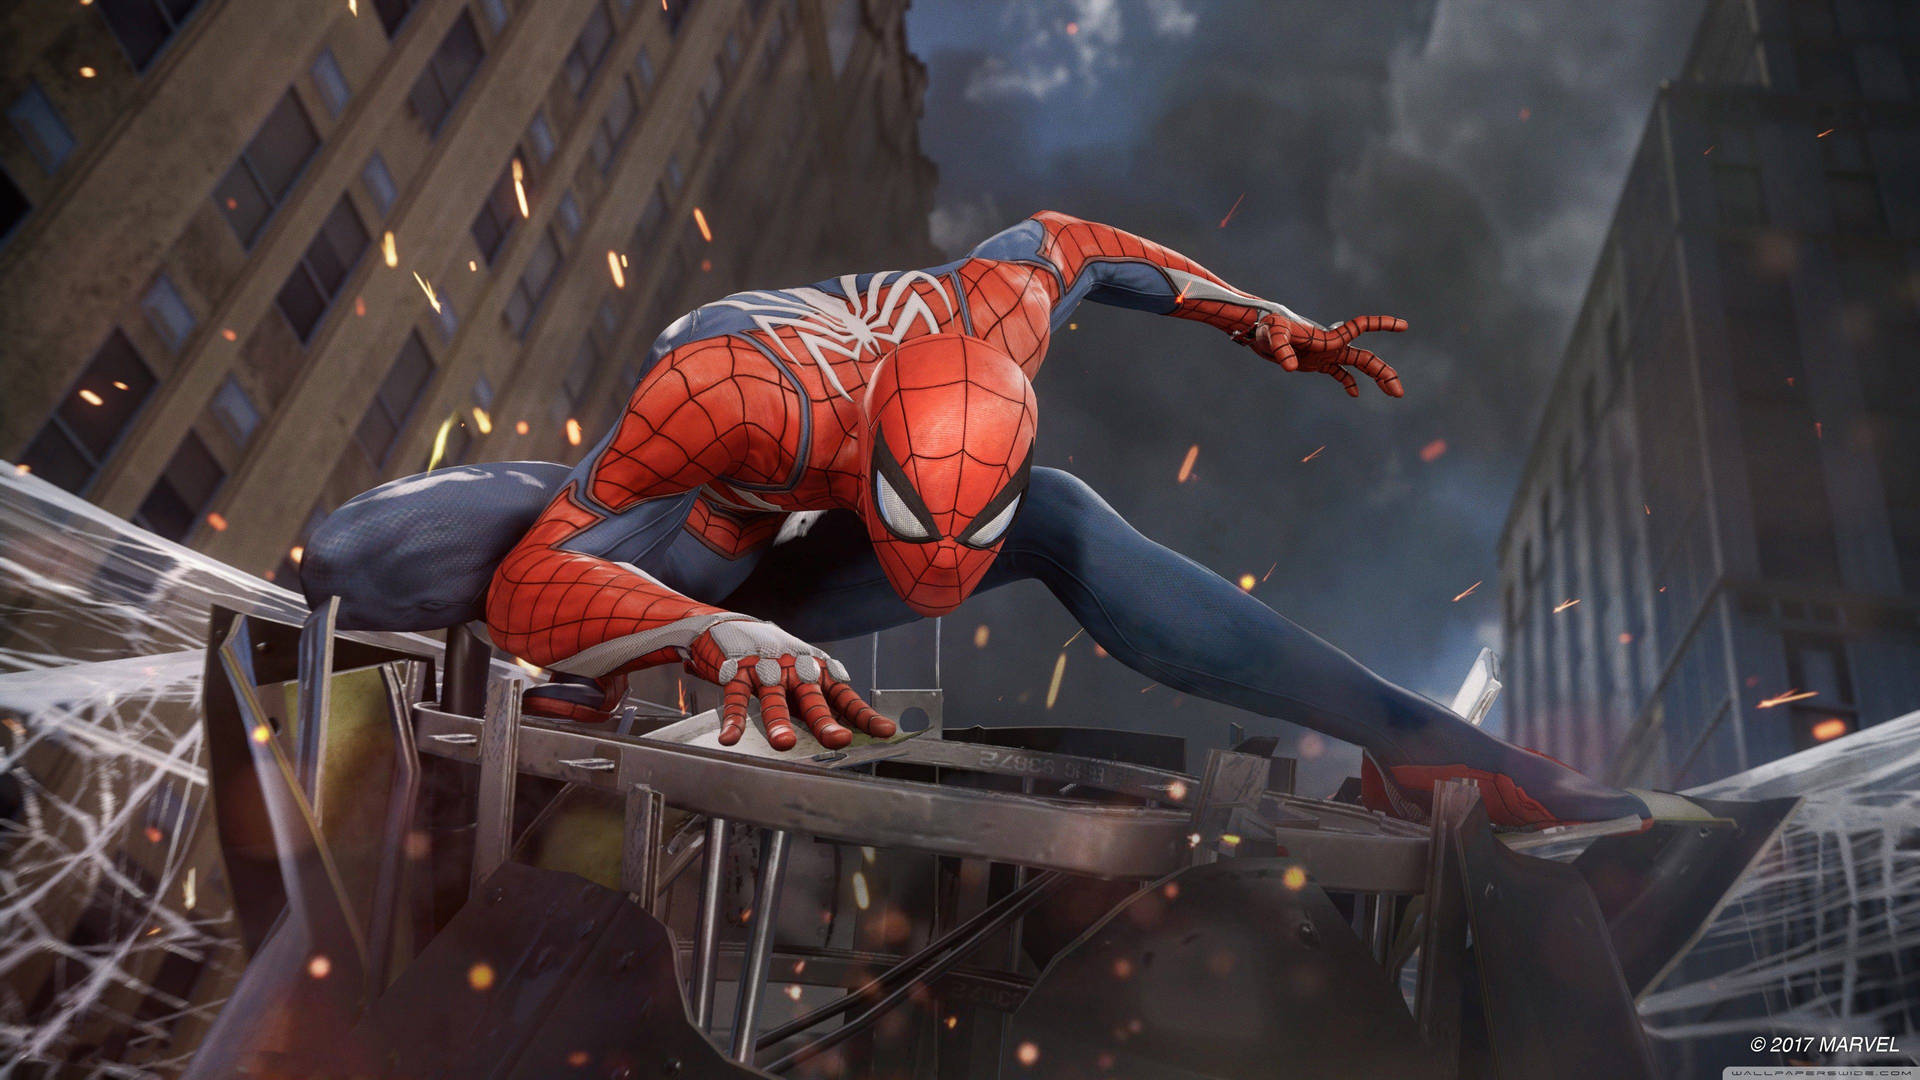 4k Marvel Spiderman In Battlefield Background